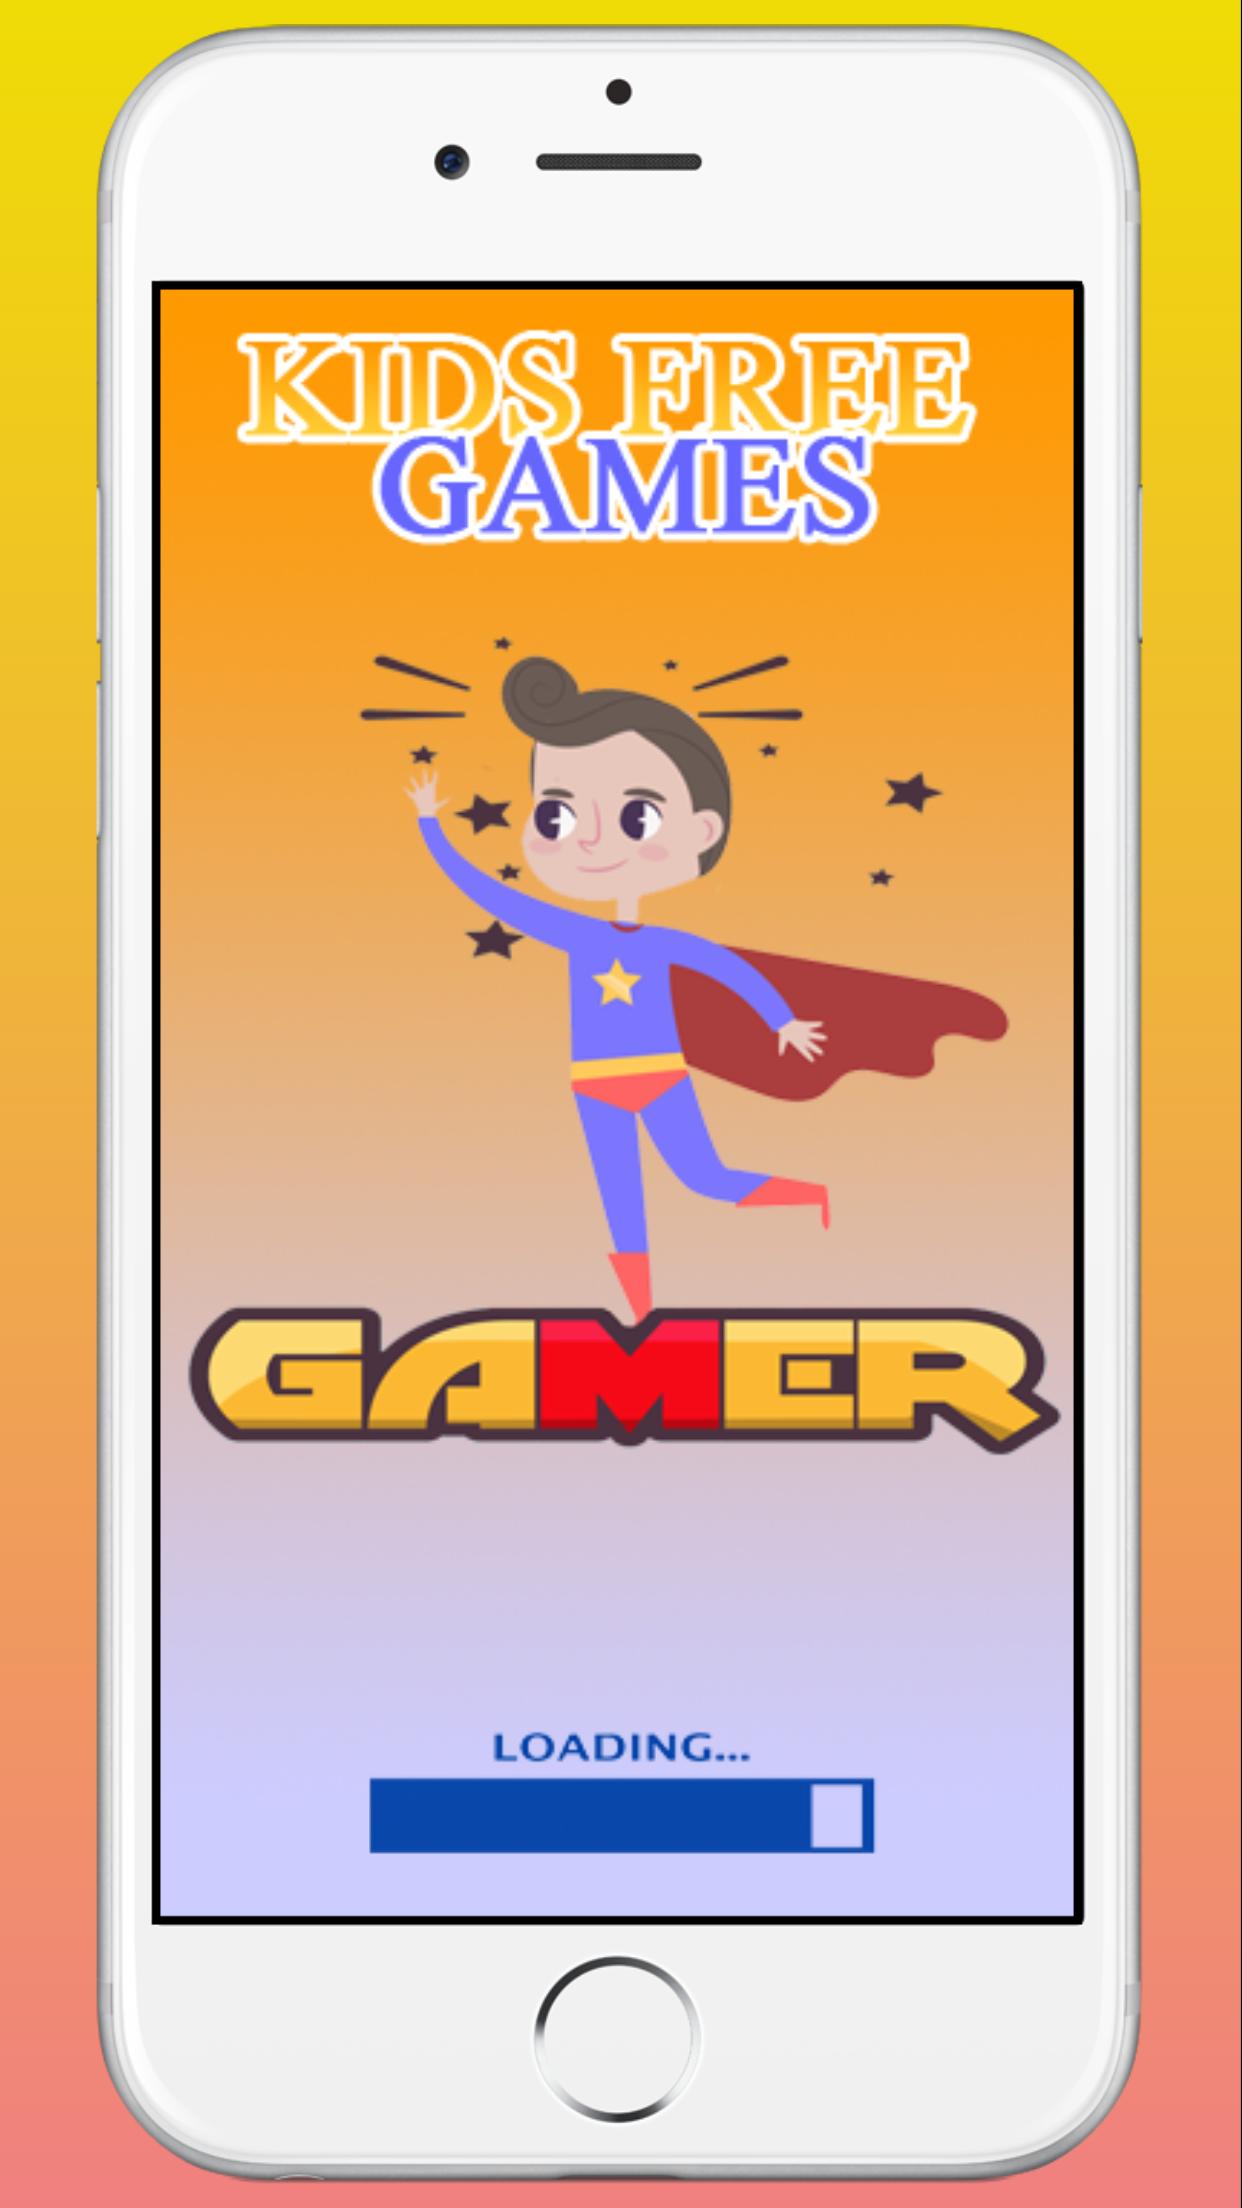 Juegos gratis para niños for Android - APK Download